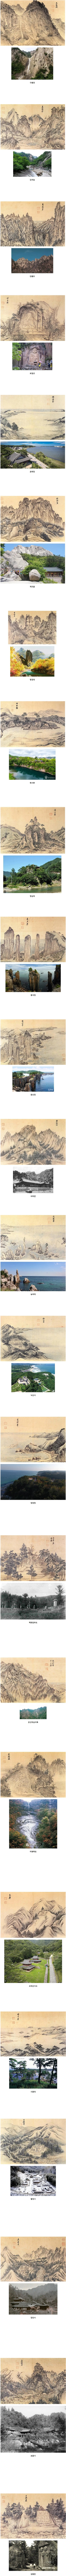 김홍도의 산수화와 실제 모습